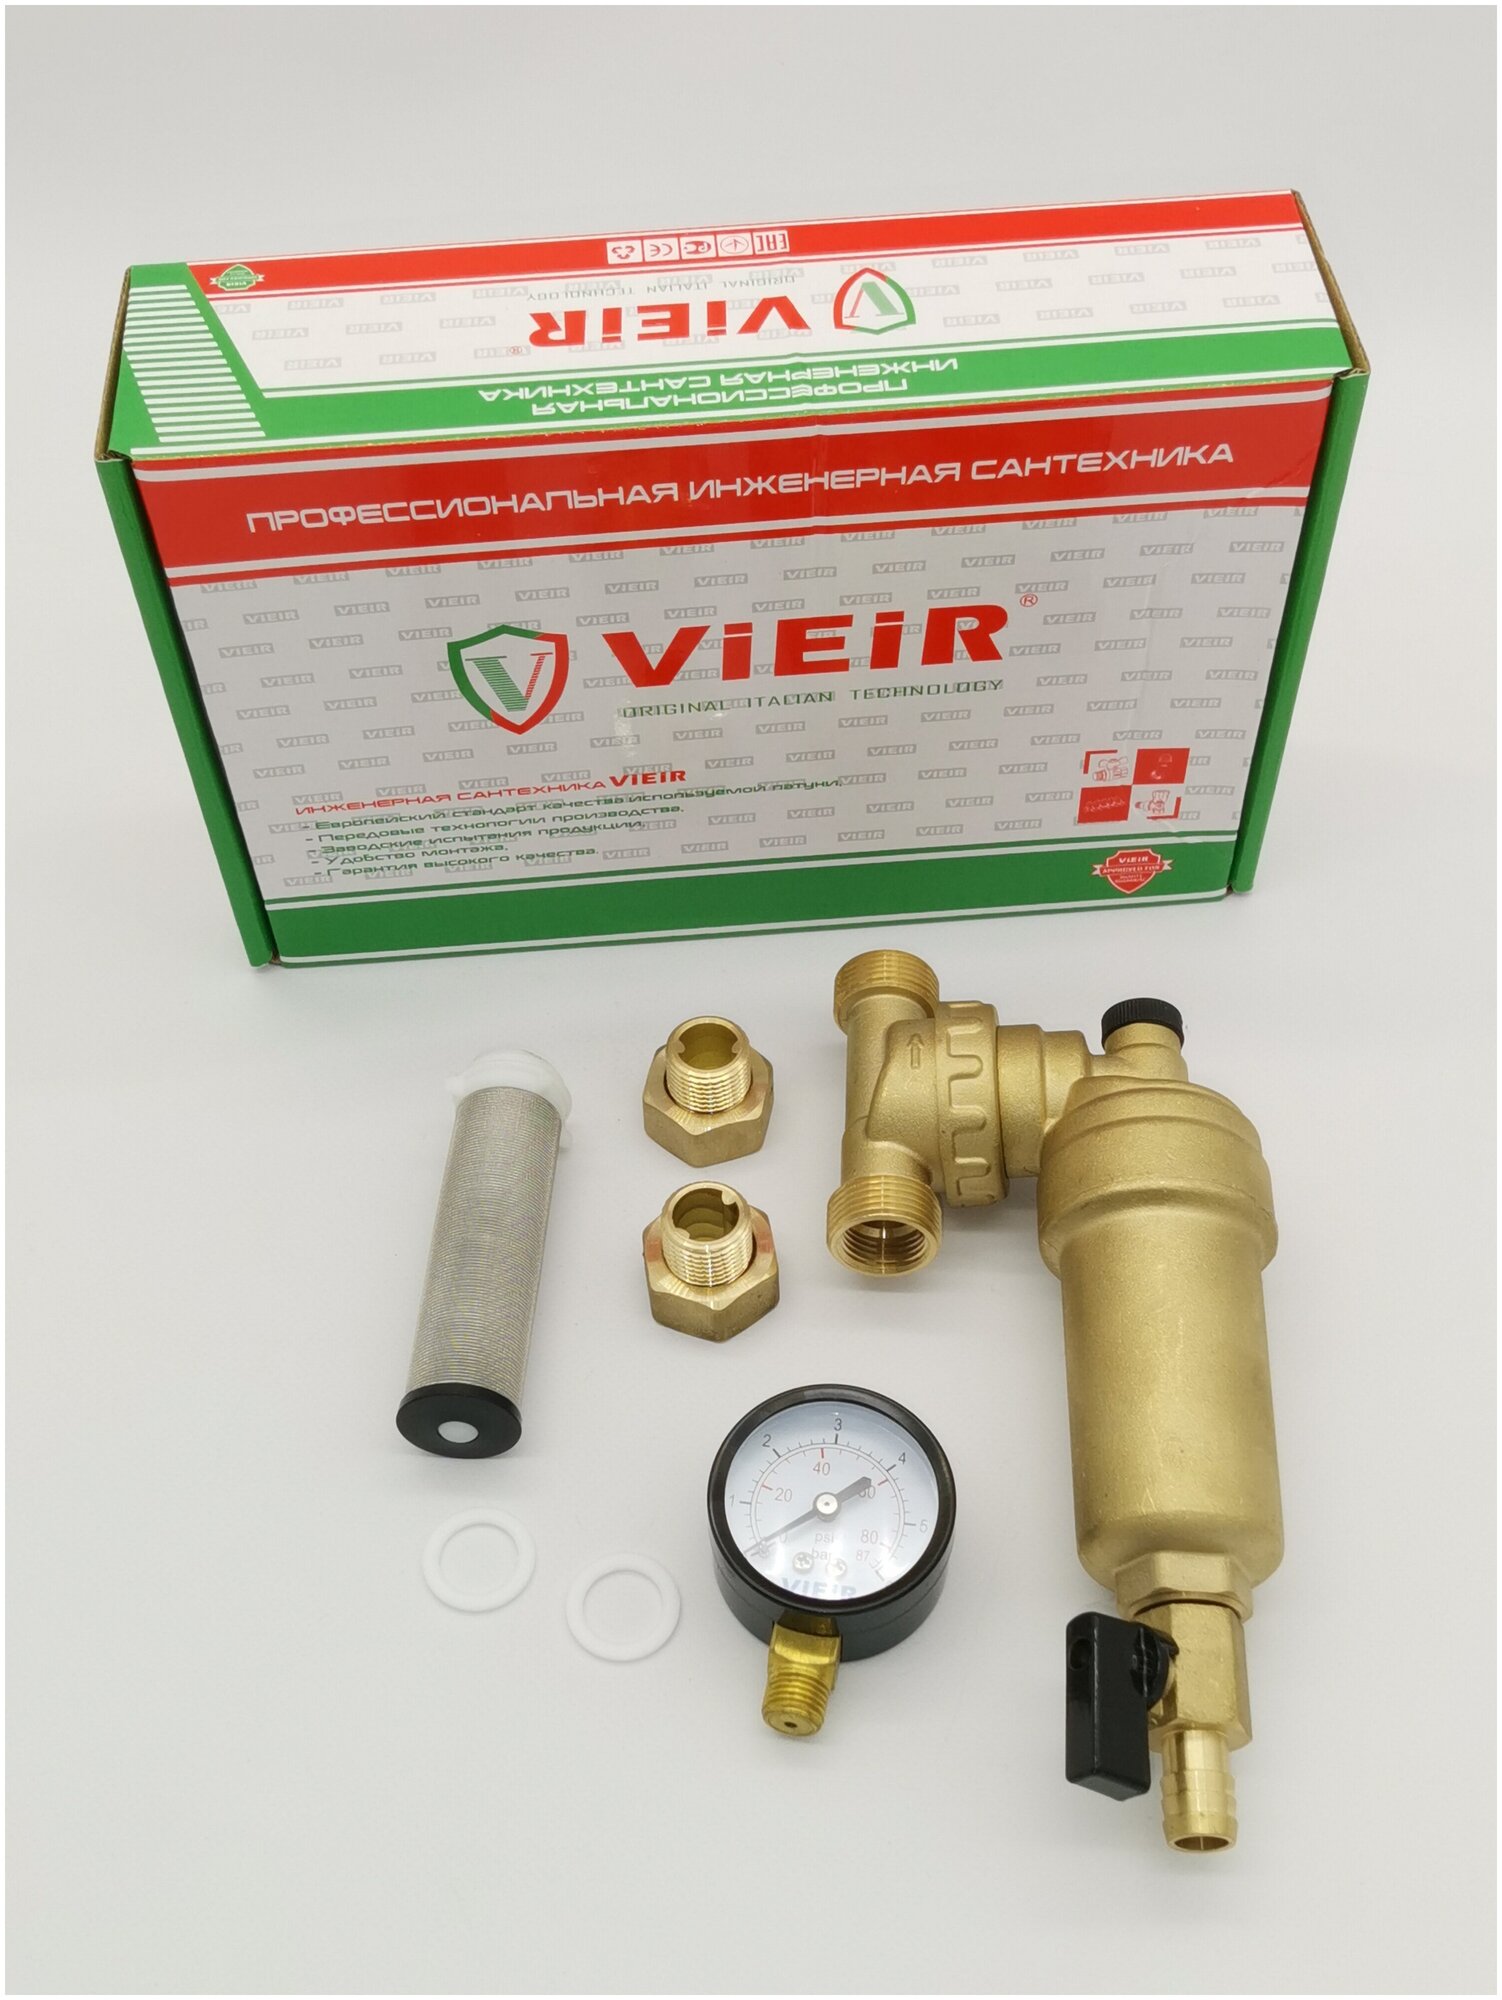 Фильтр самопромывной свободного вращения 1/2" с манометром для горячей воды ViEiR арт. JH147